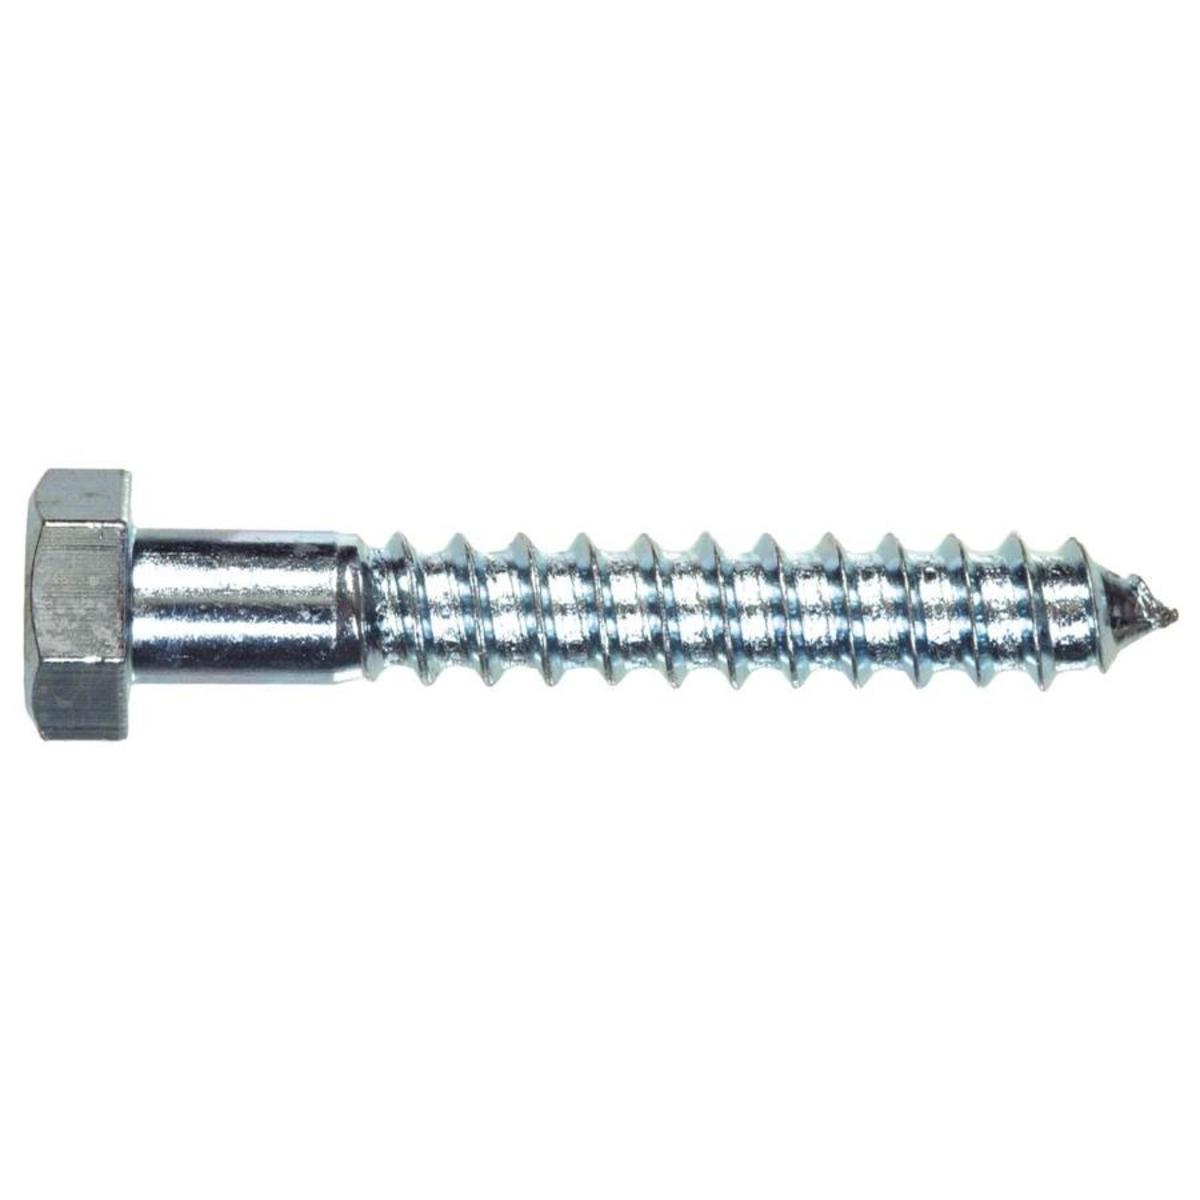 A plain zinc lag screw.